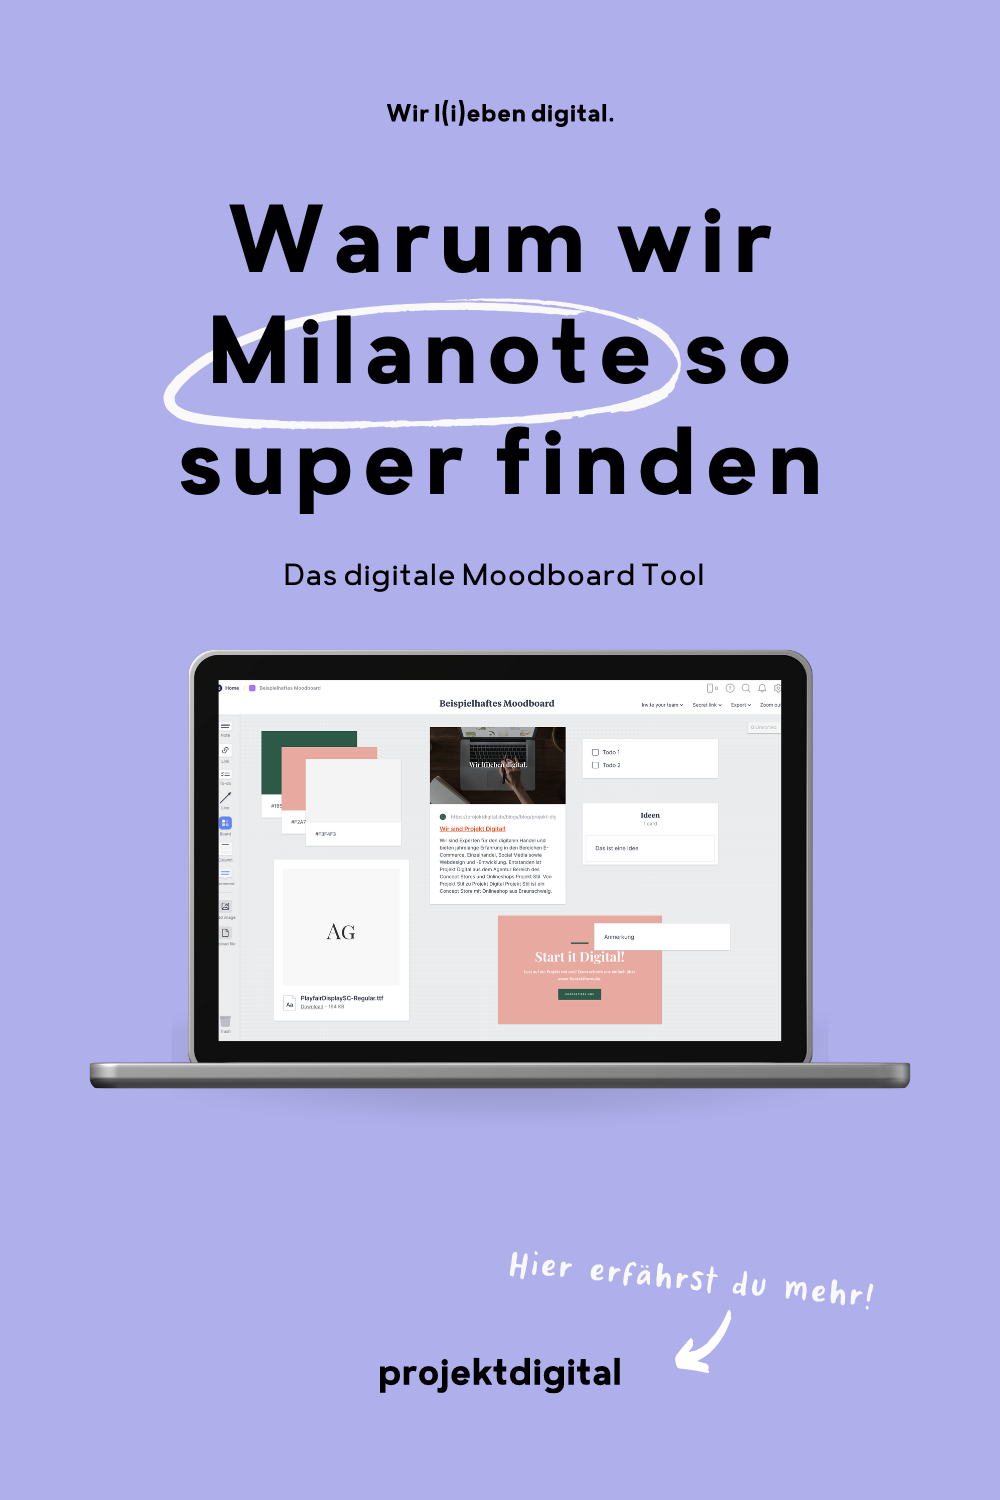 Warum wir das digitale Moodboard Milanote so super finden? Klick dich gleich zum Beitrag! 